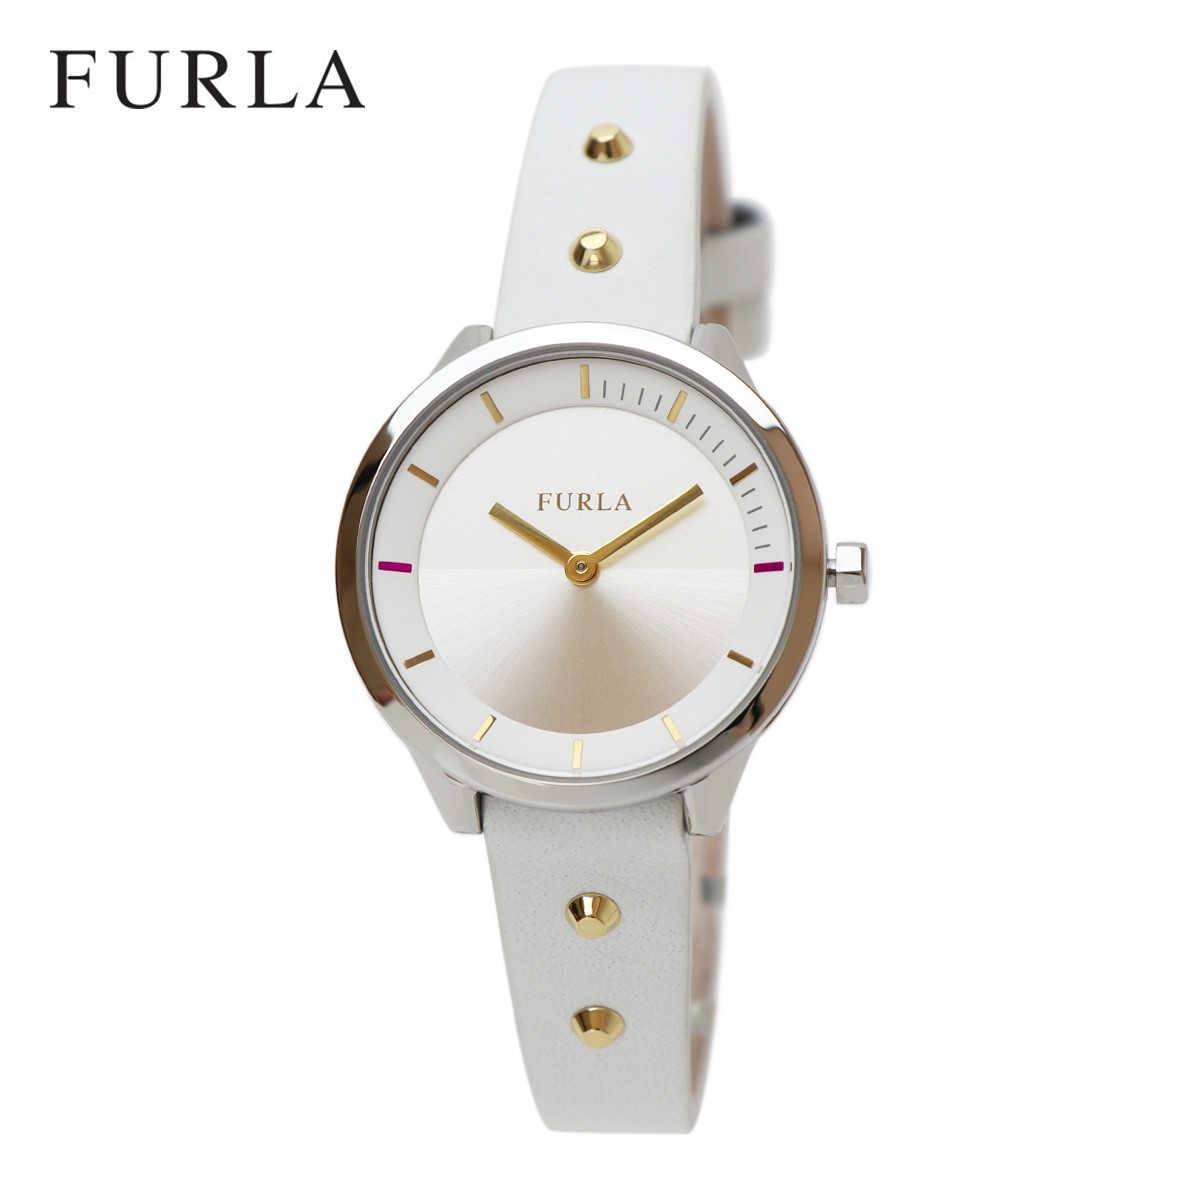 FURLA フルラ 腕時計 メトロポリス R4251102524 レディース ホワイト